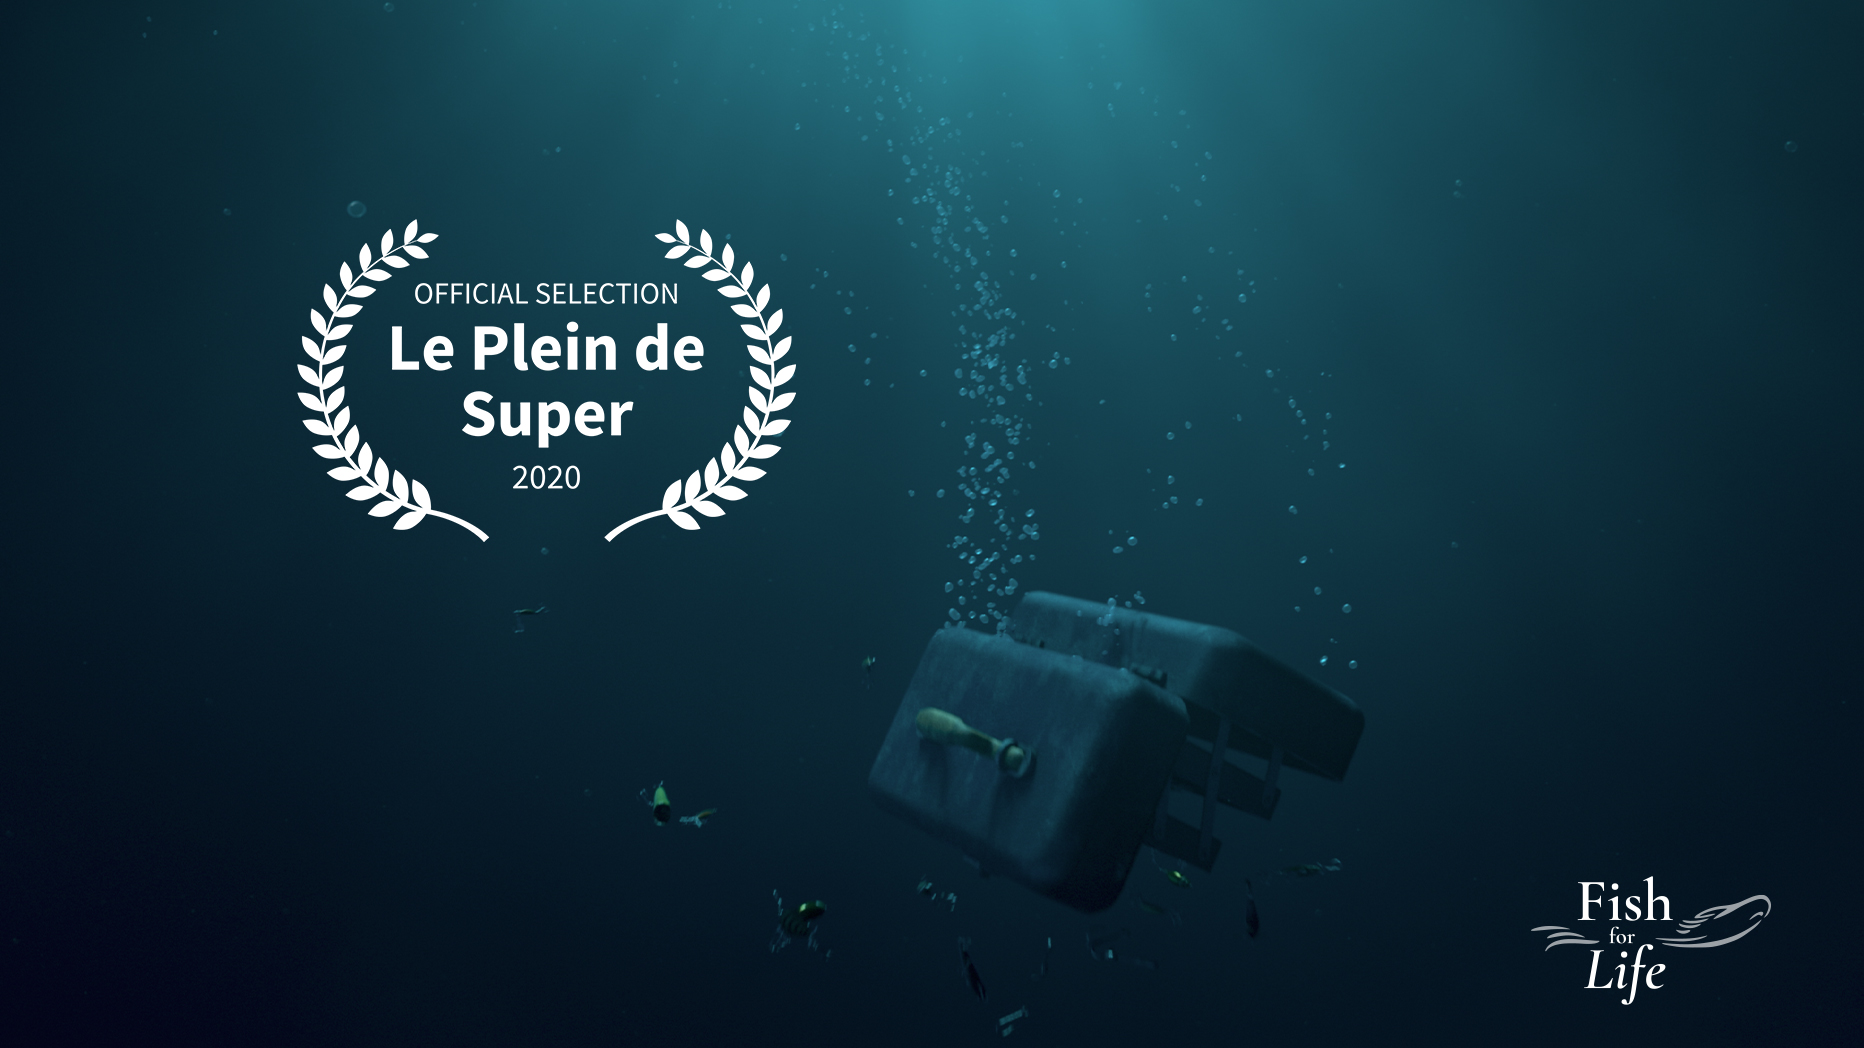 Fish for Life – Le Plain de Super official selection